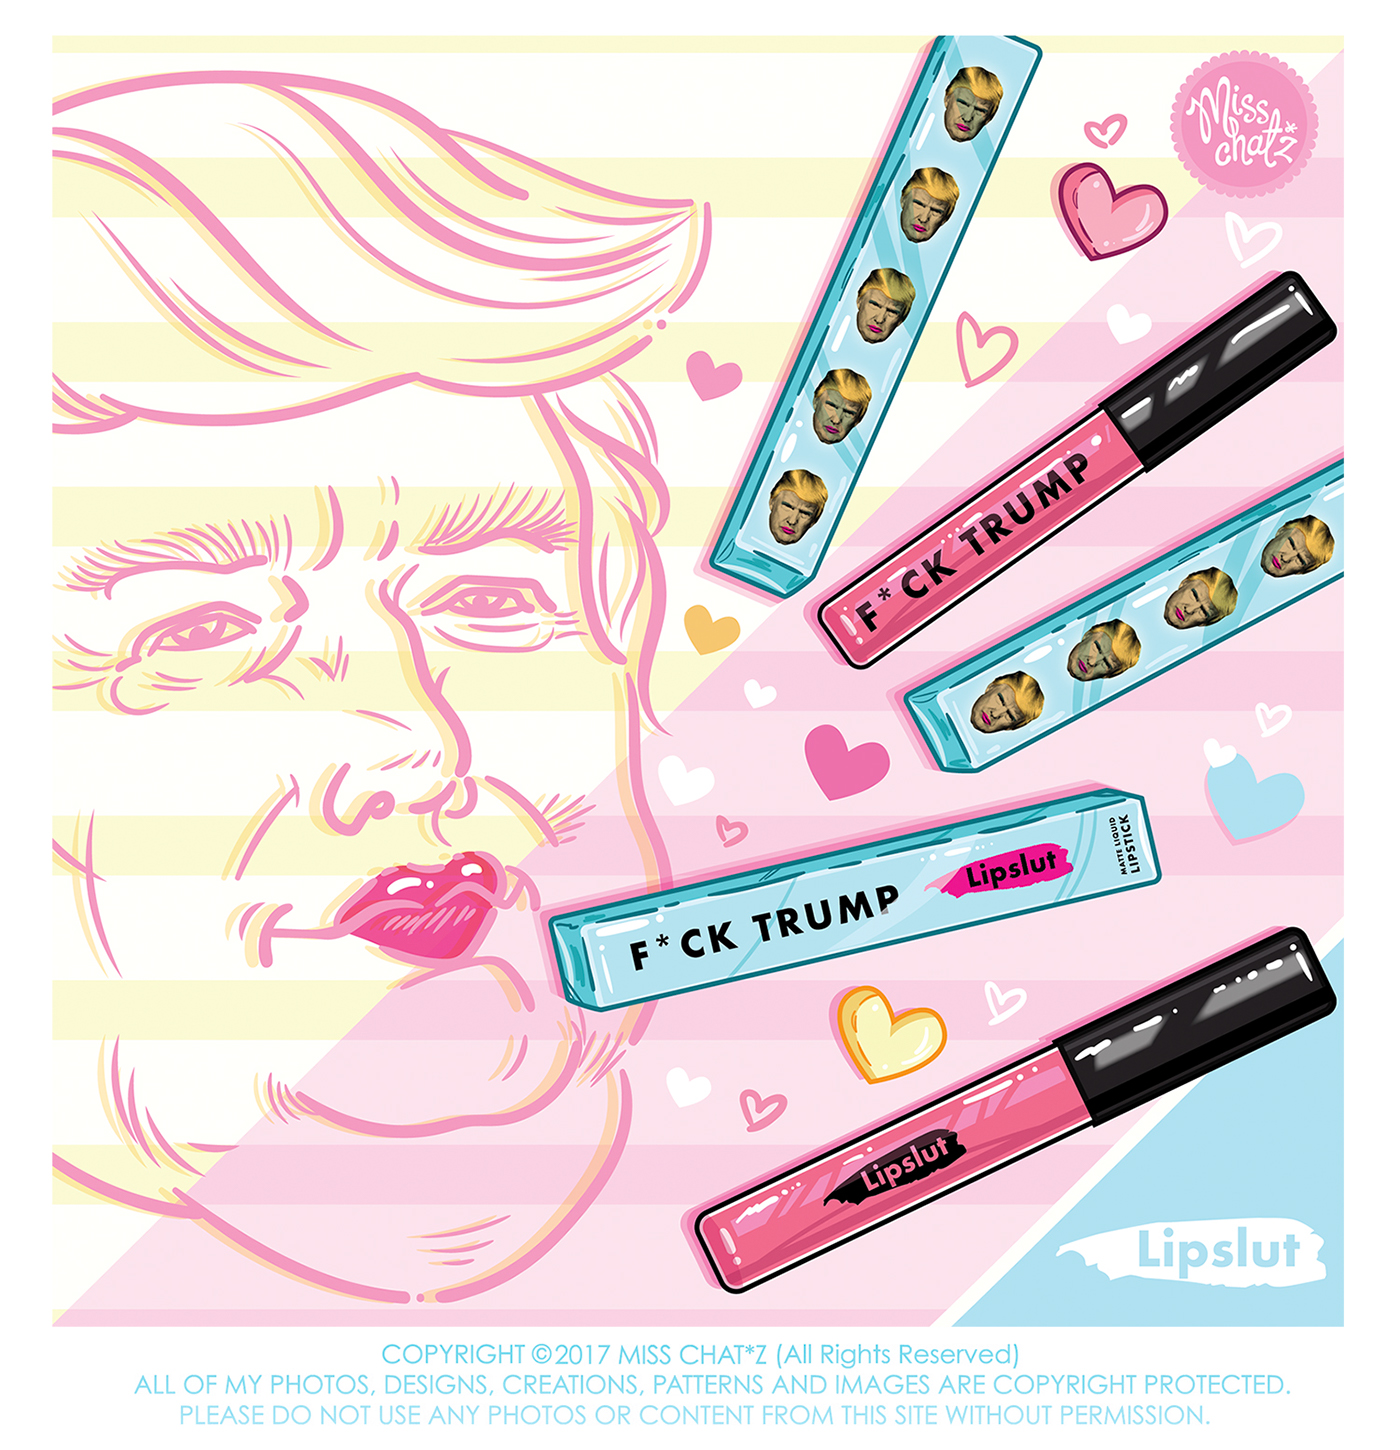 lip slut lipstick makeup Trump social kiss misschatz cosmetics makeup artist